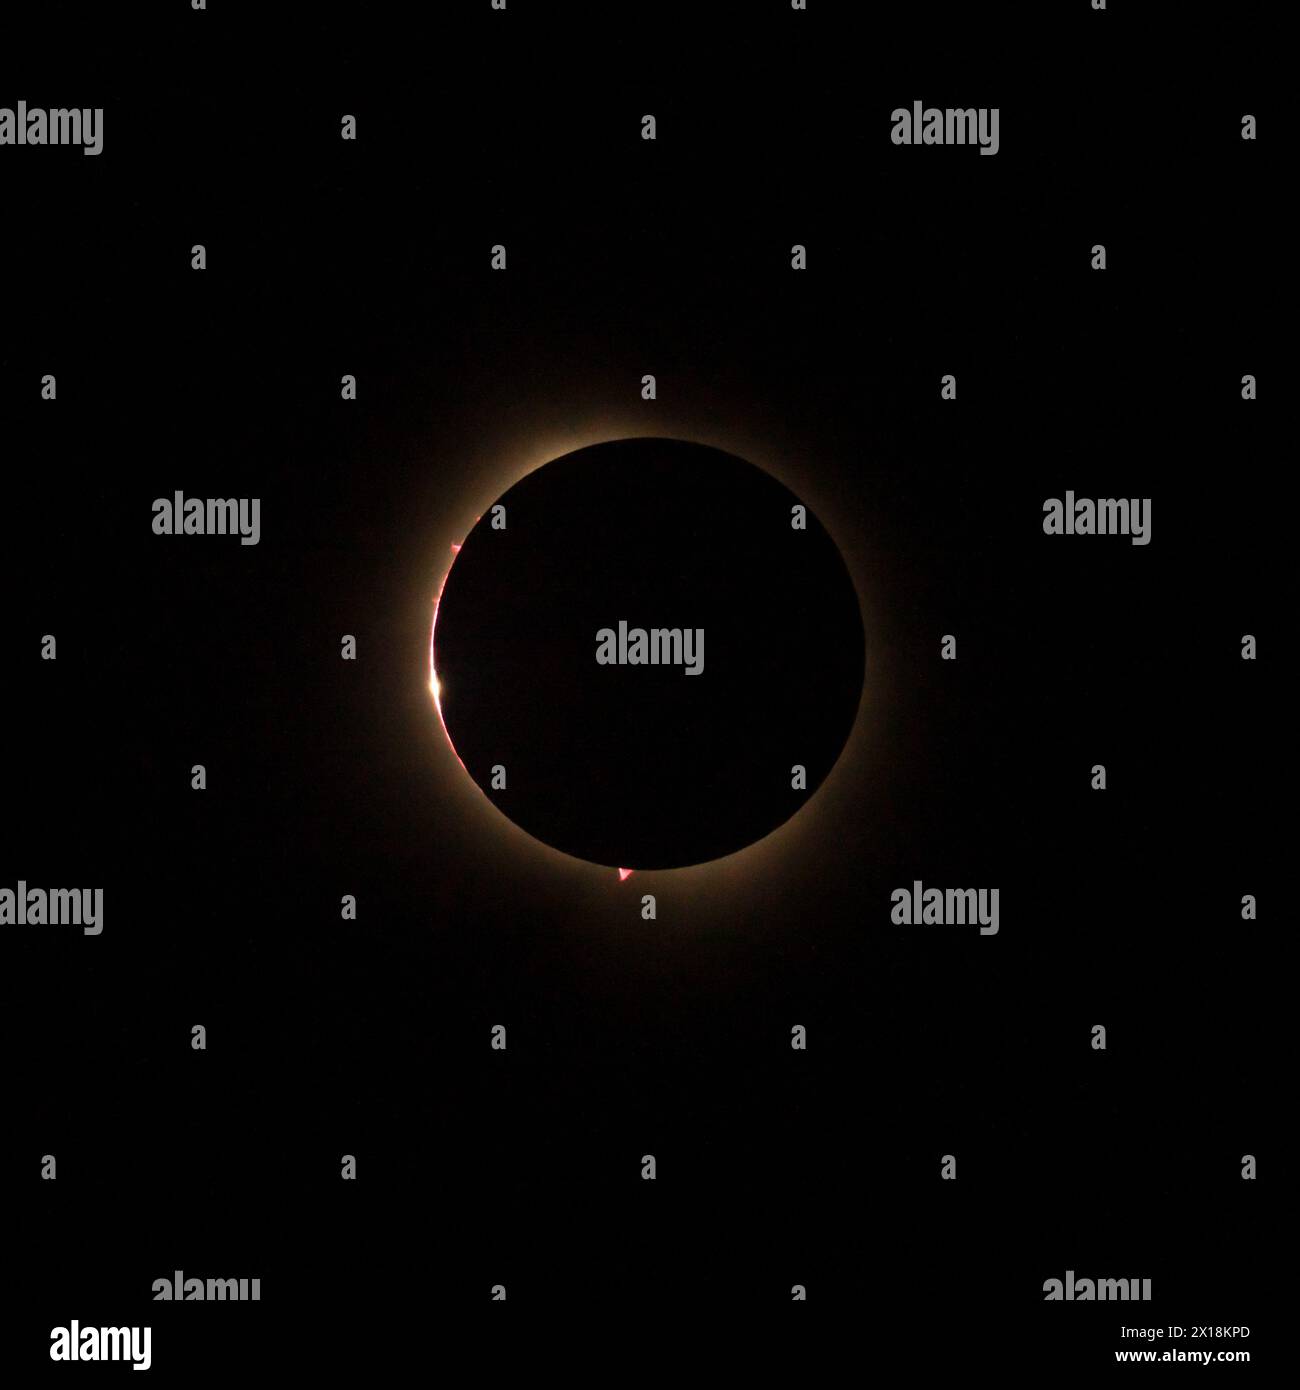 Immagine HD dell'eclissi solare nel 2024 con la luna che finalmente copre il sole. Le perle di luce di Baily viste attraverso i canyon sulla luna Foto Stock